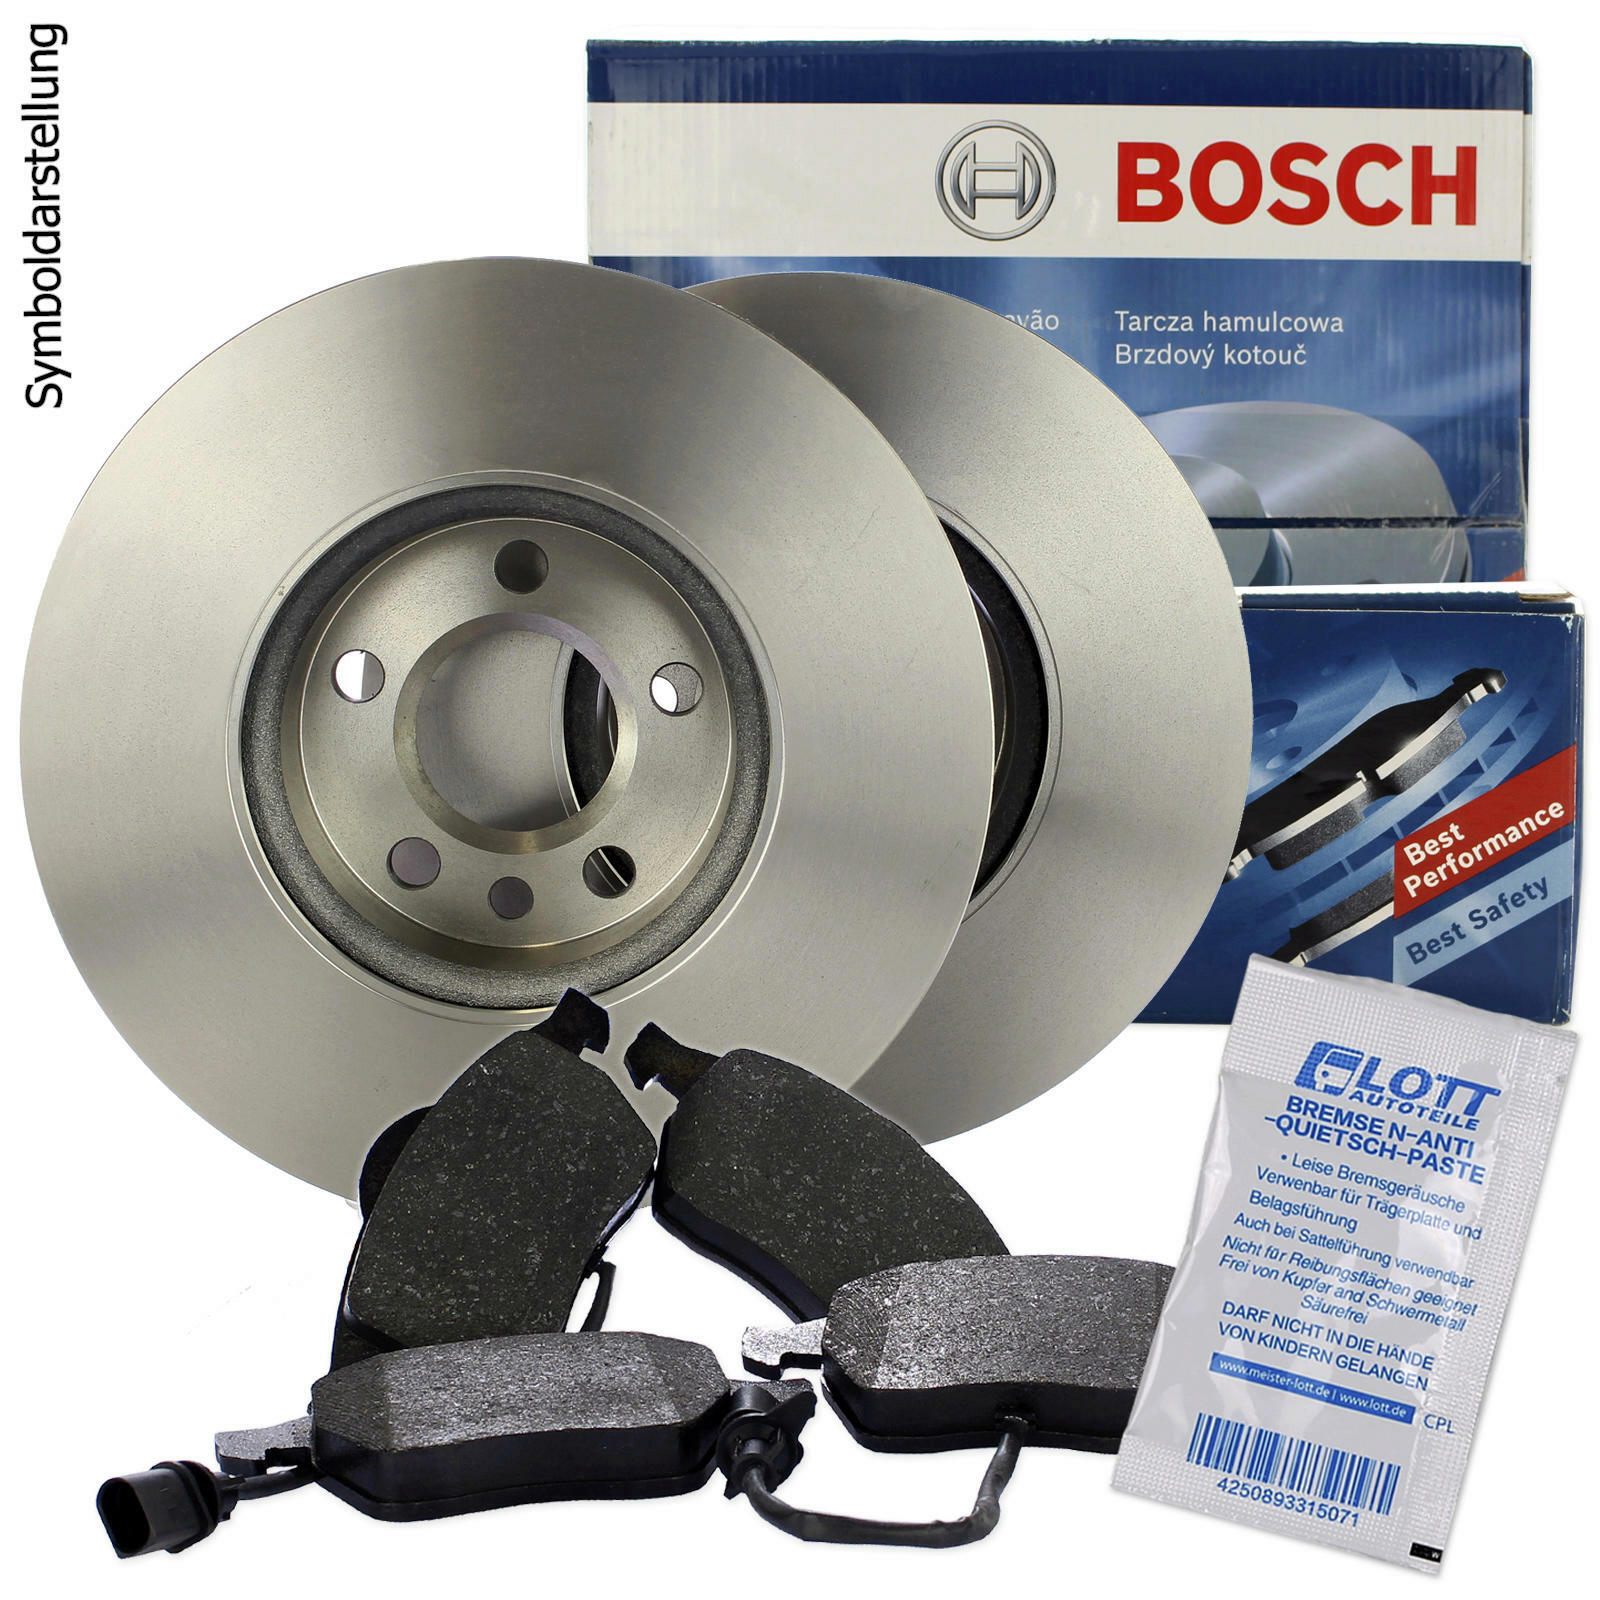 BOSCH Bremsscheiben + Bosch Bremsbeläge